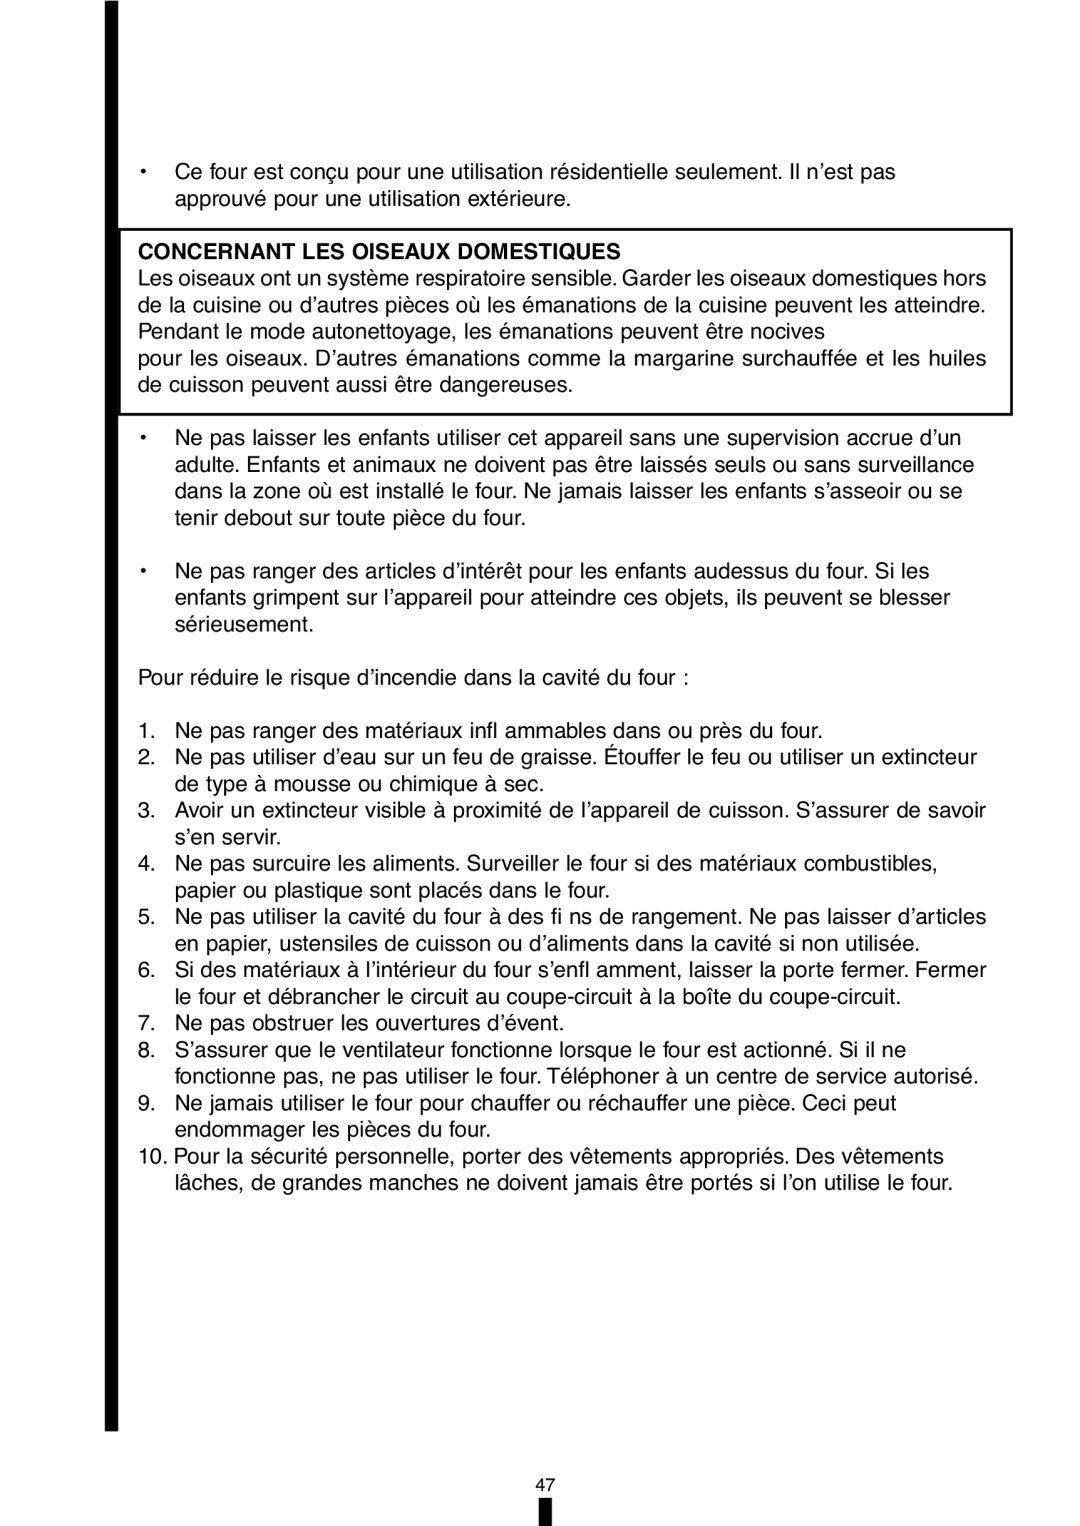 Fagor America 5HA-196X manual Concernant Les Oiseaux Domestiques 